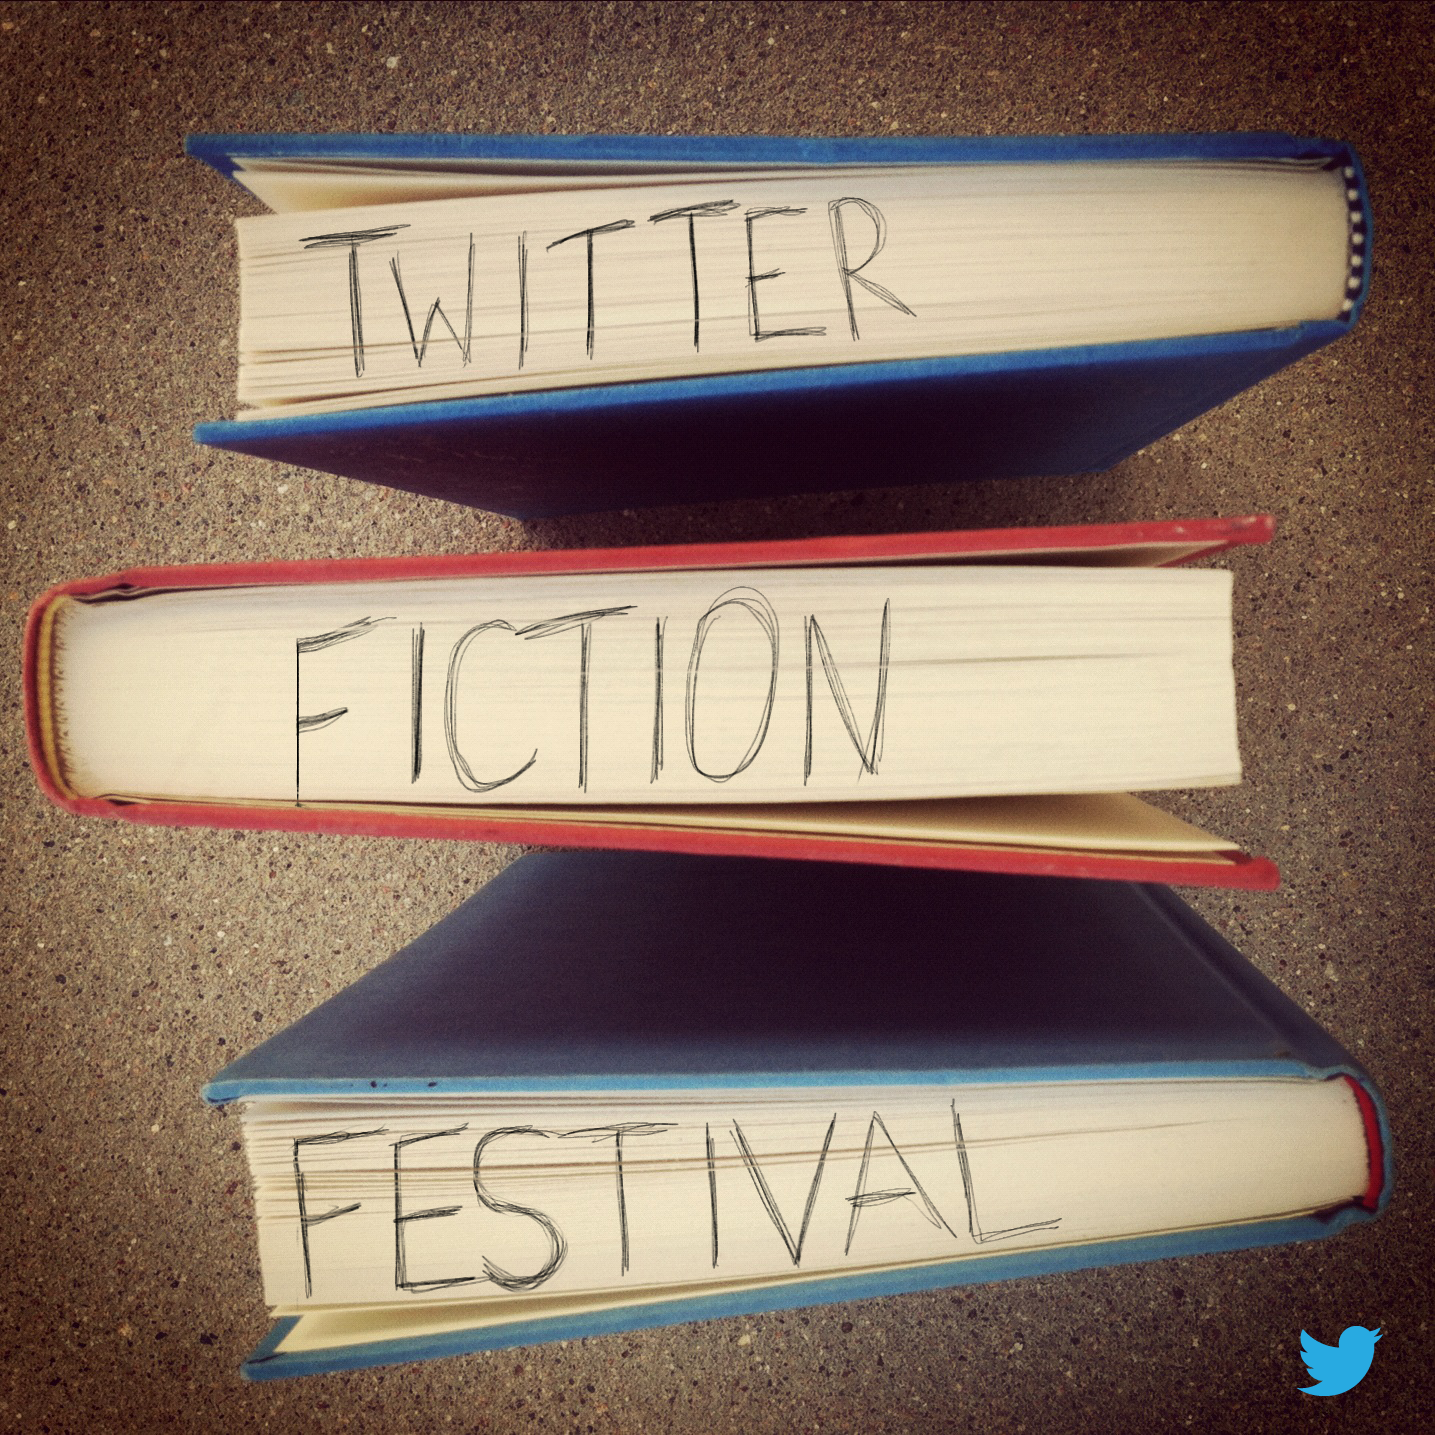 Twitter’s Fiction Festival!